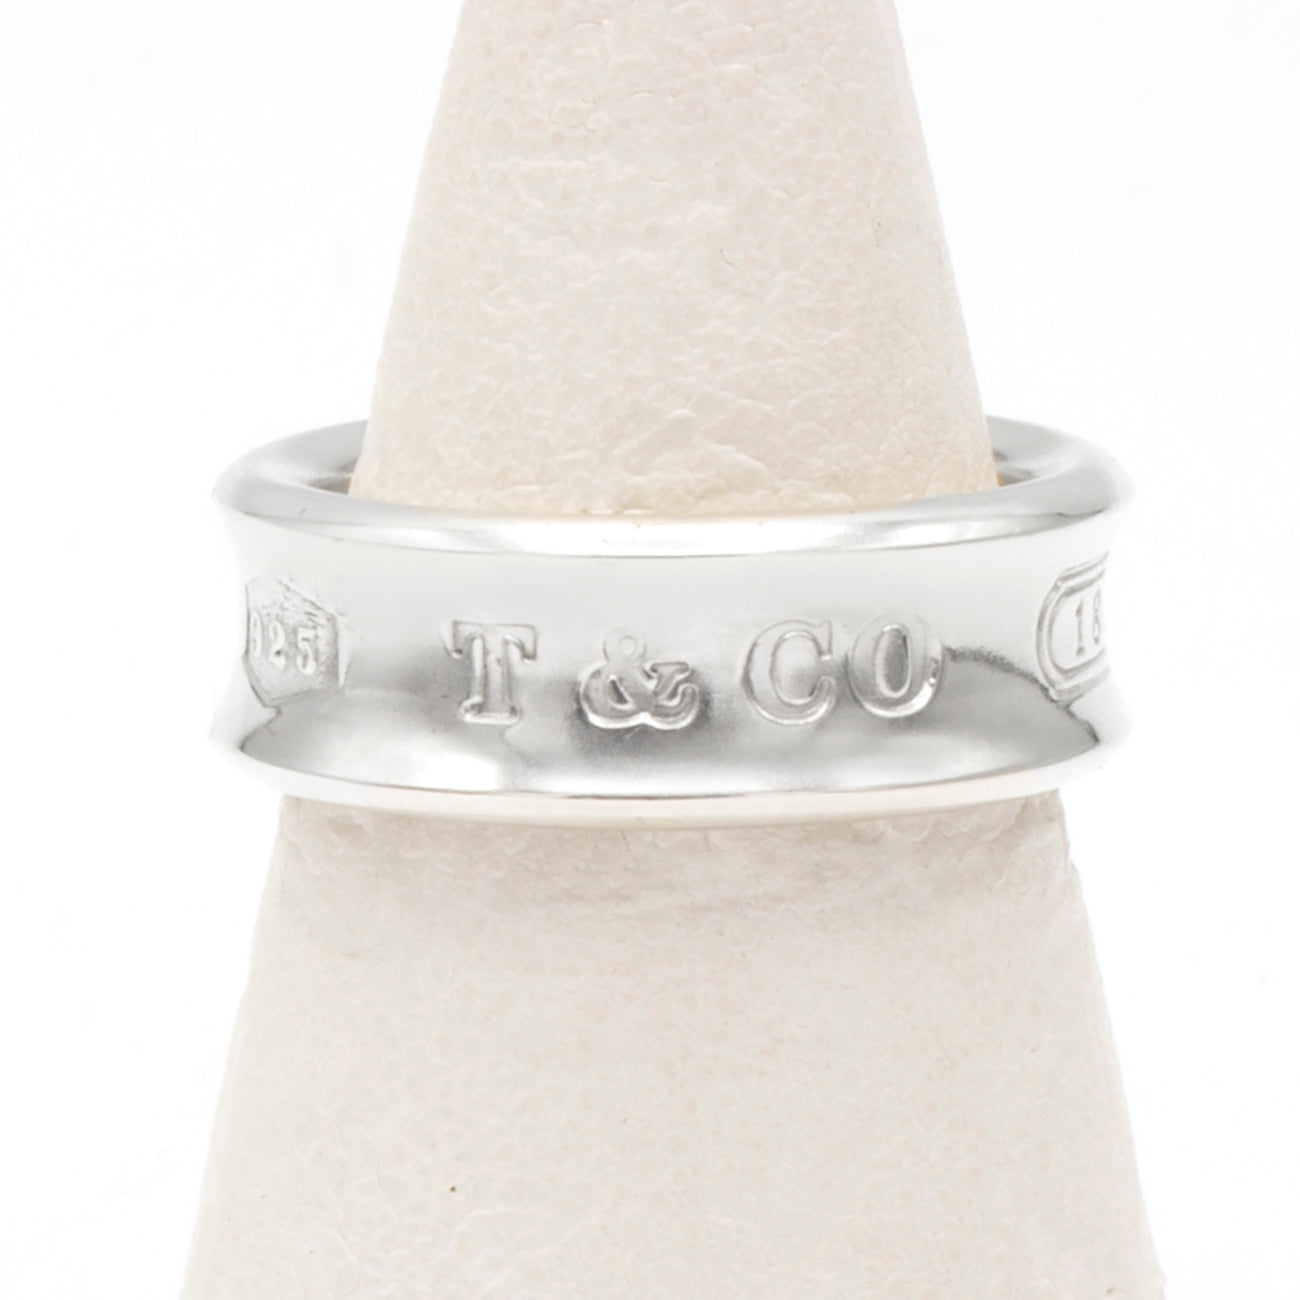 Tiffany & Co 1837 ring